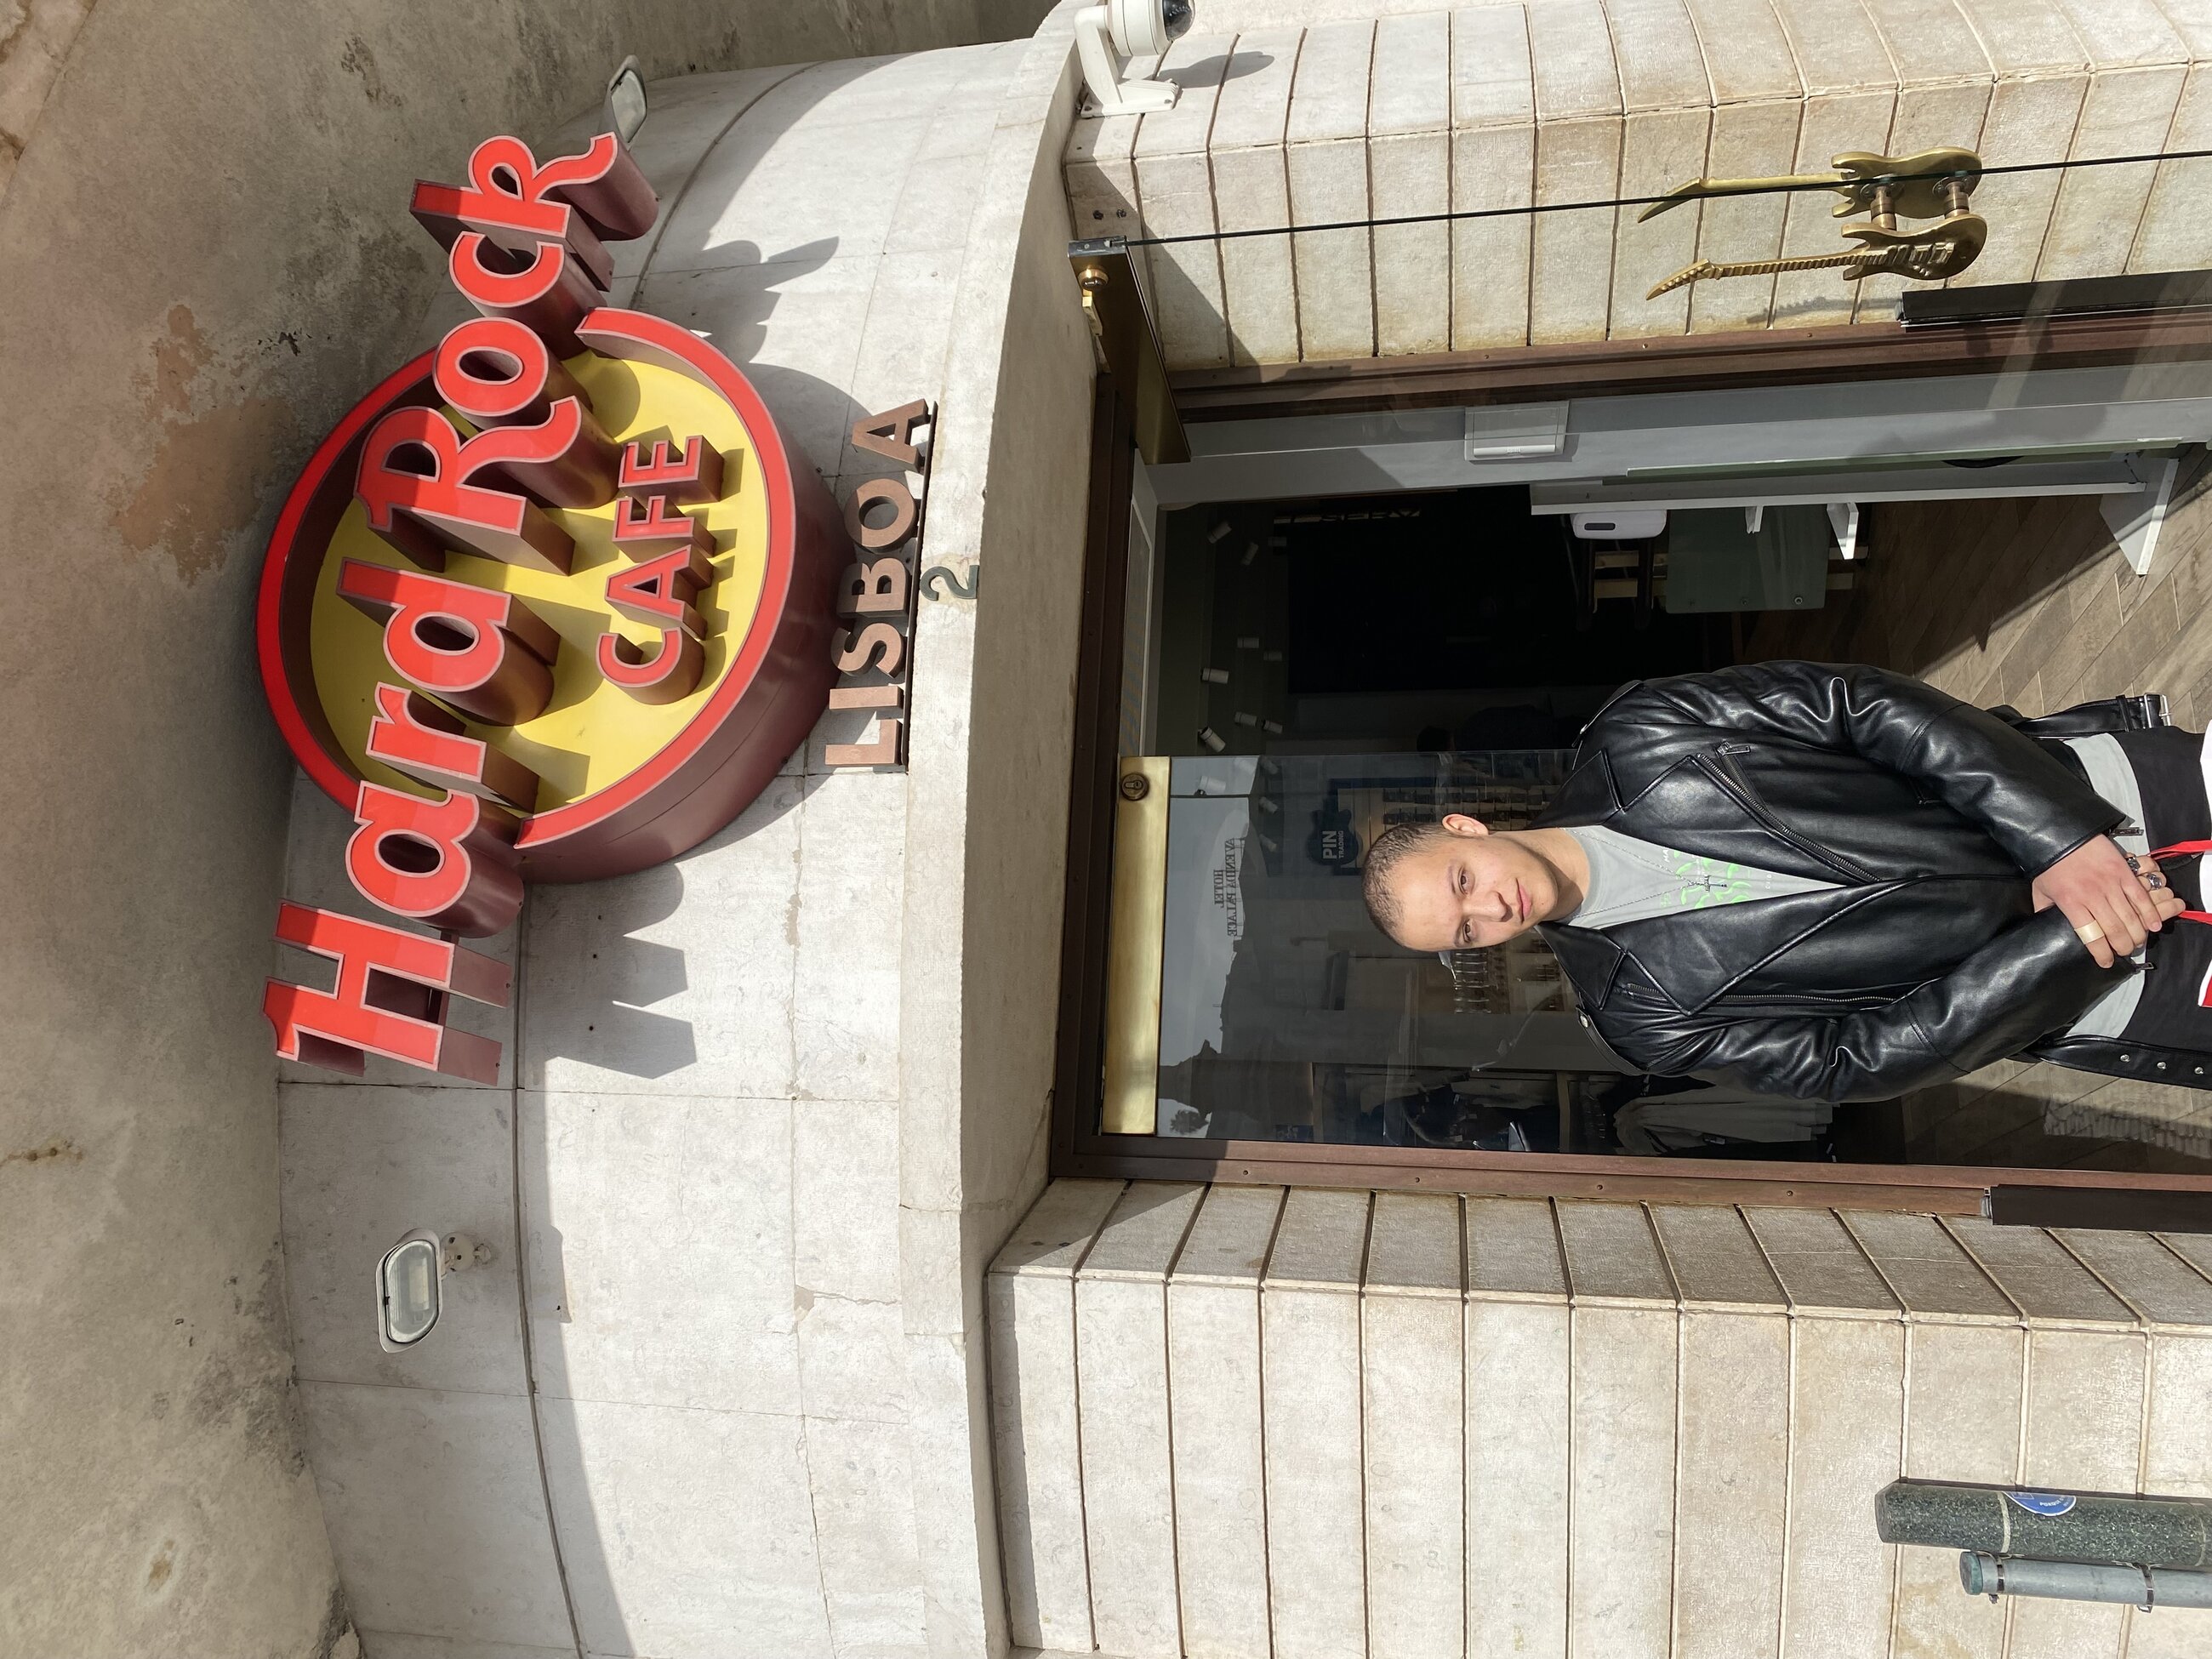 When I visited HardRock cafe Lisbon